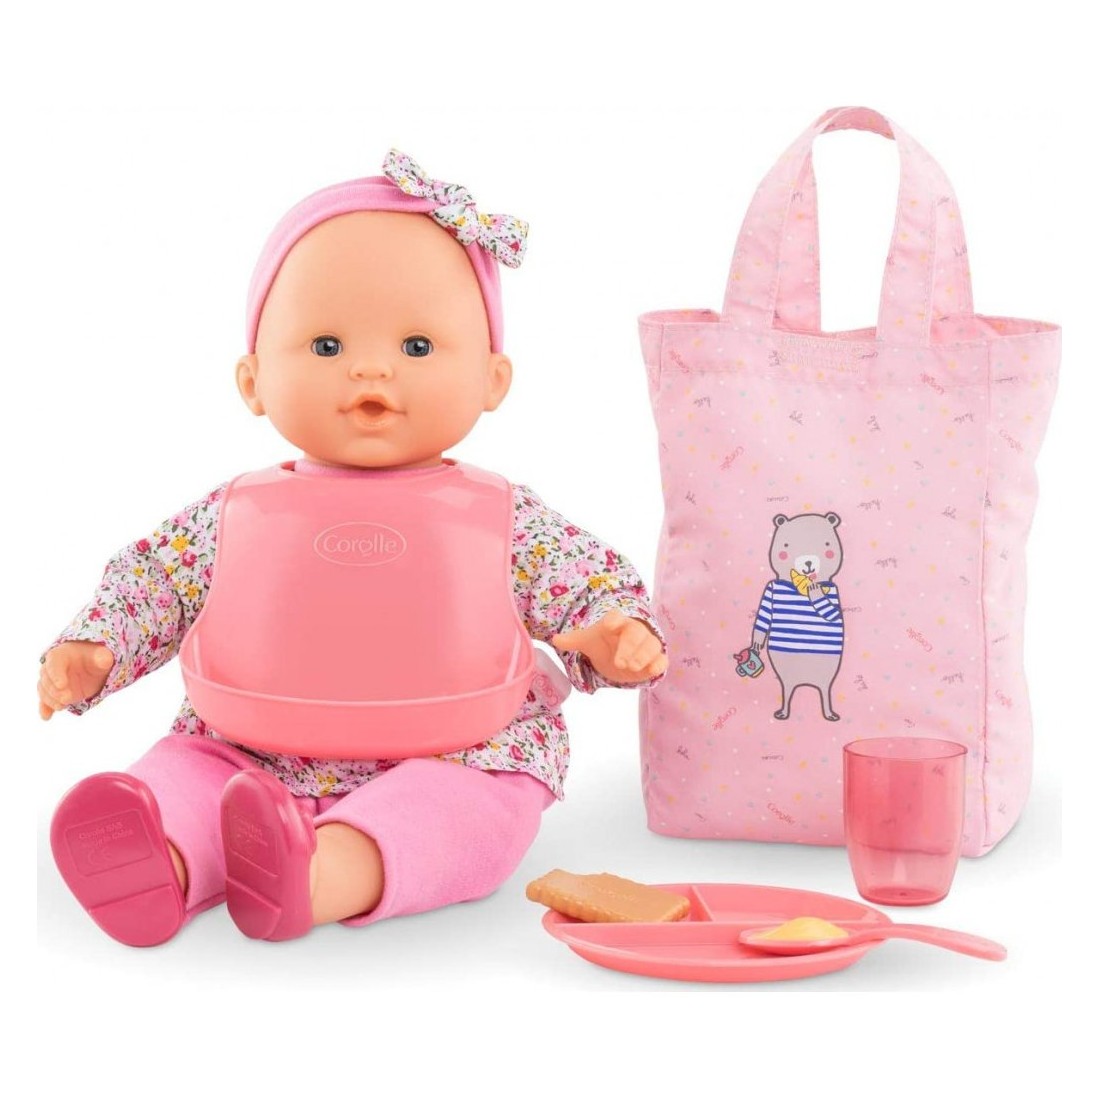 Porte bébé pour poupée Corolle 2005 bleu marine et rose en très